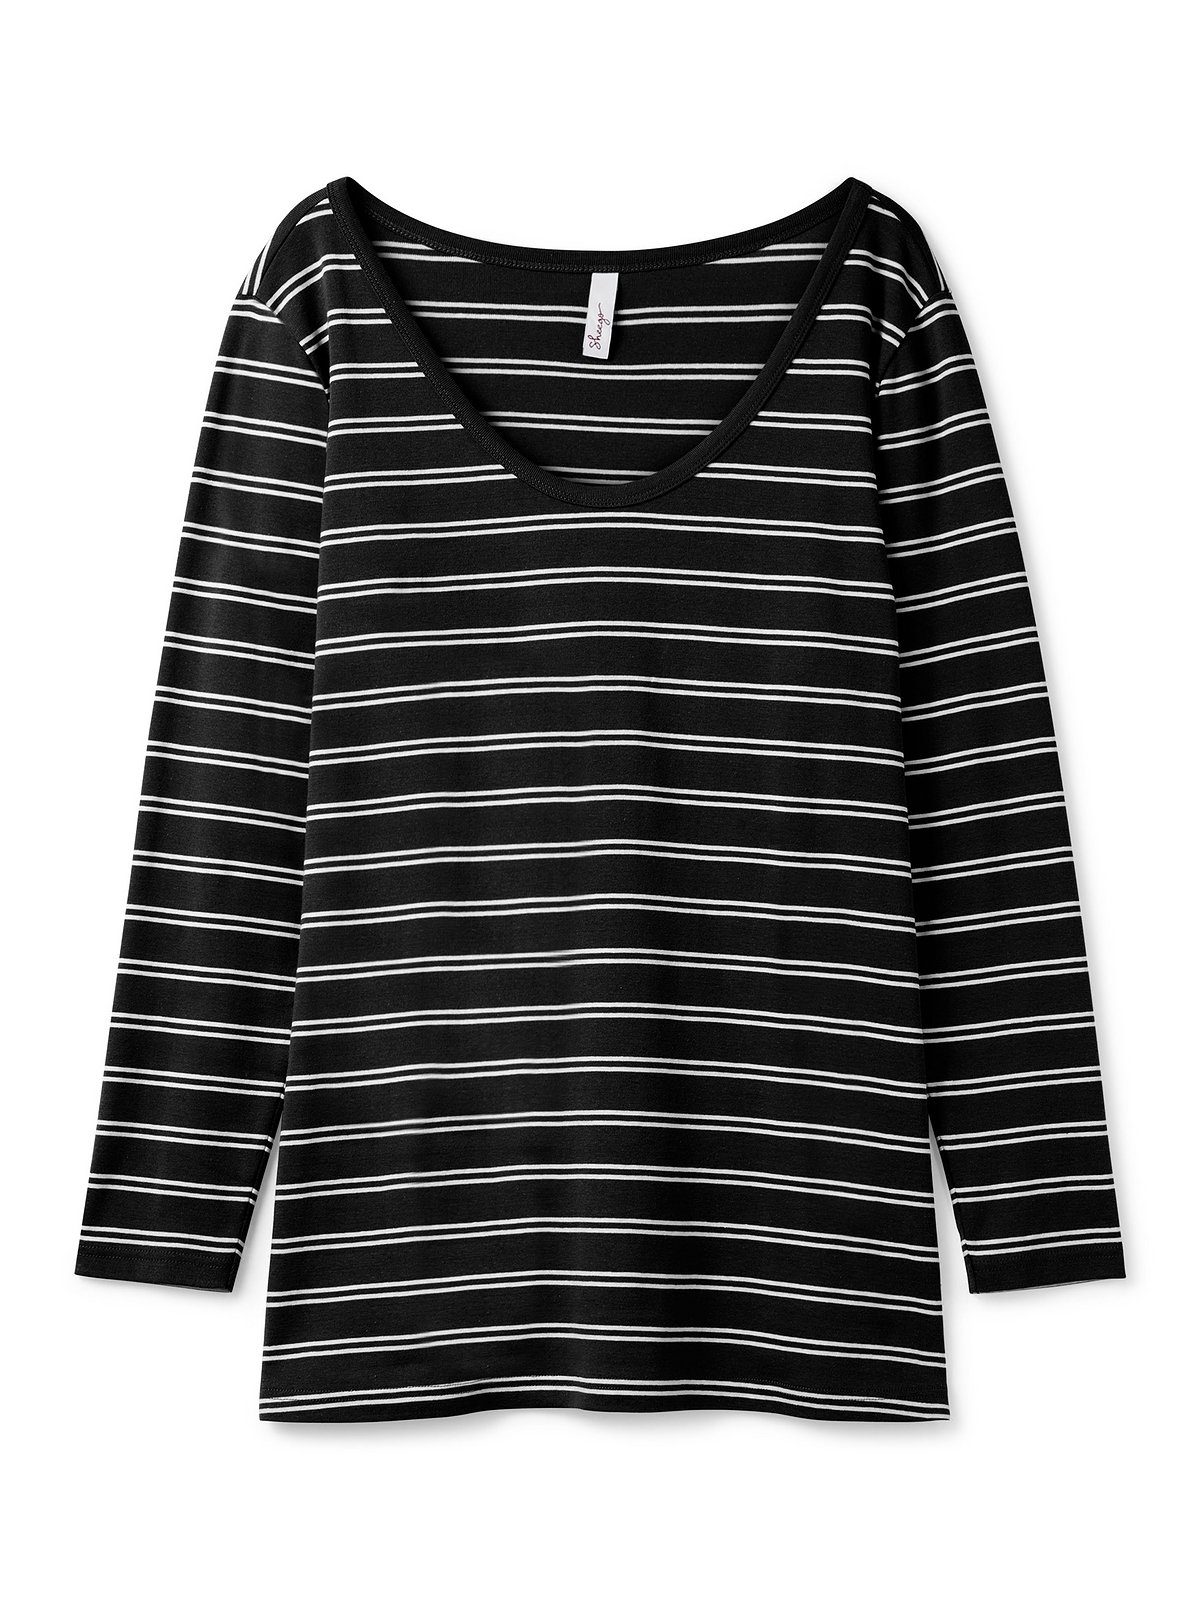 Sheego Langarmshirt Große Größen Streifen, schwarz-weiß Rippqualität mit in